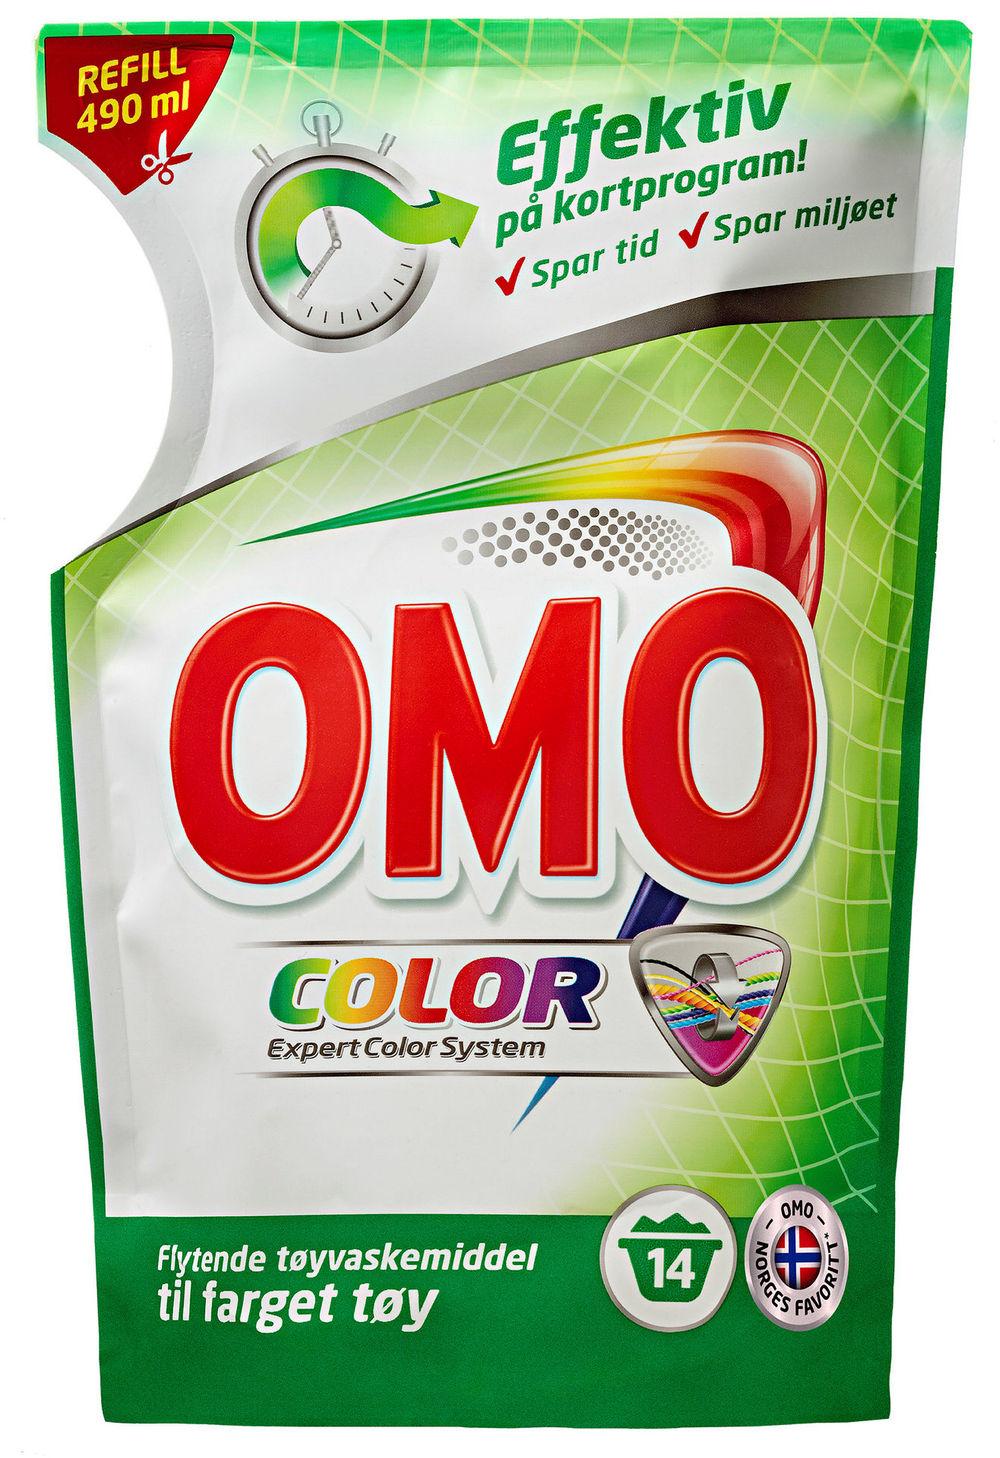 Omo Color Flytende Refill, 490 ml